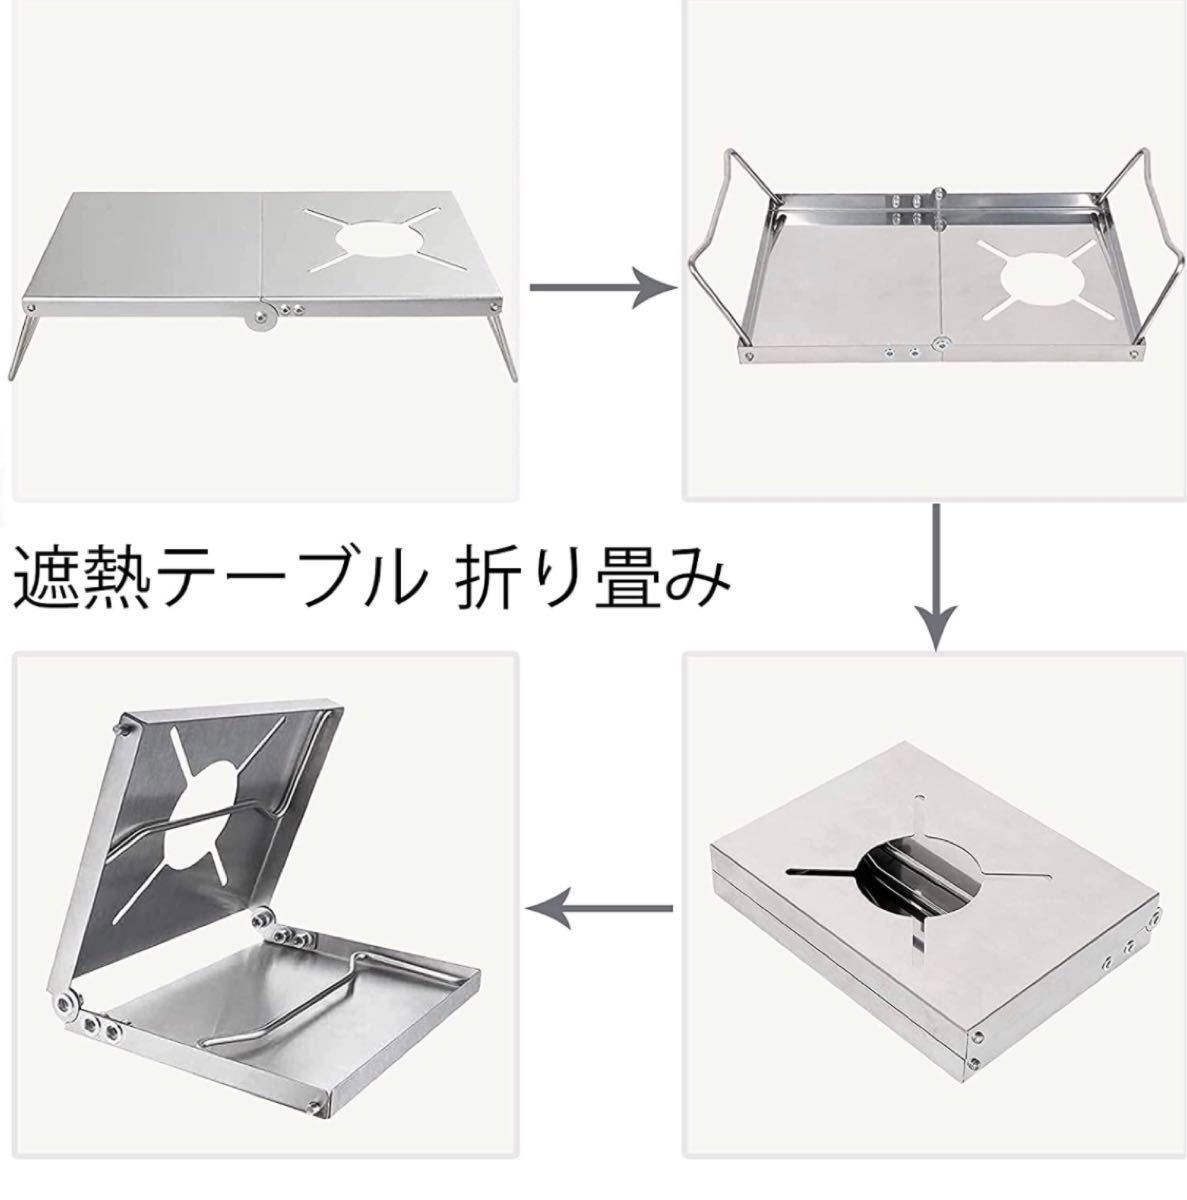 遮熱テーブル アウトドア テーブル ソト シングルバーナー st310 折り畳み アルミ合金 軽量 コンパクト 遮熱板 二つ折り